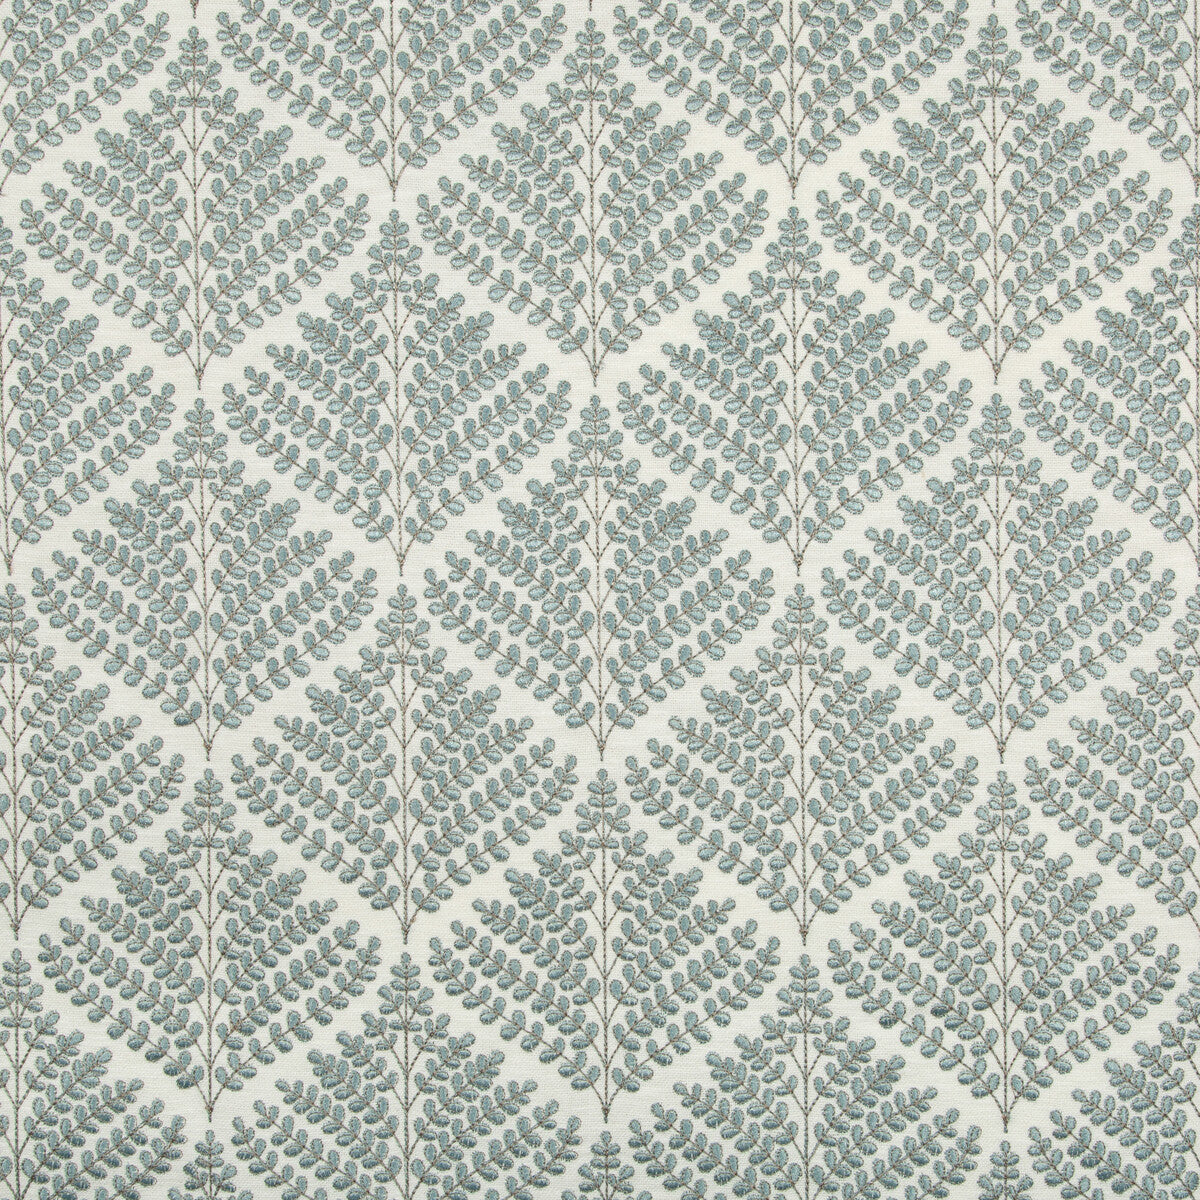 Kravet Basics fabric in 36143-135 color - pattern 36143.135.0 - by Kravet Basics